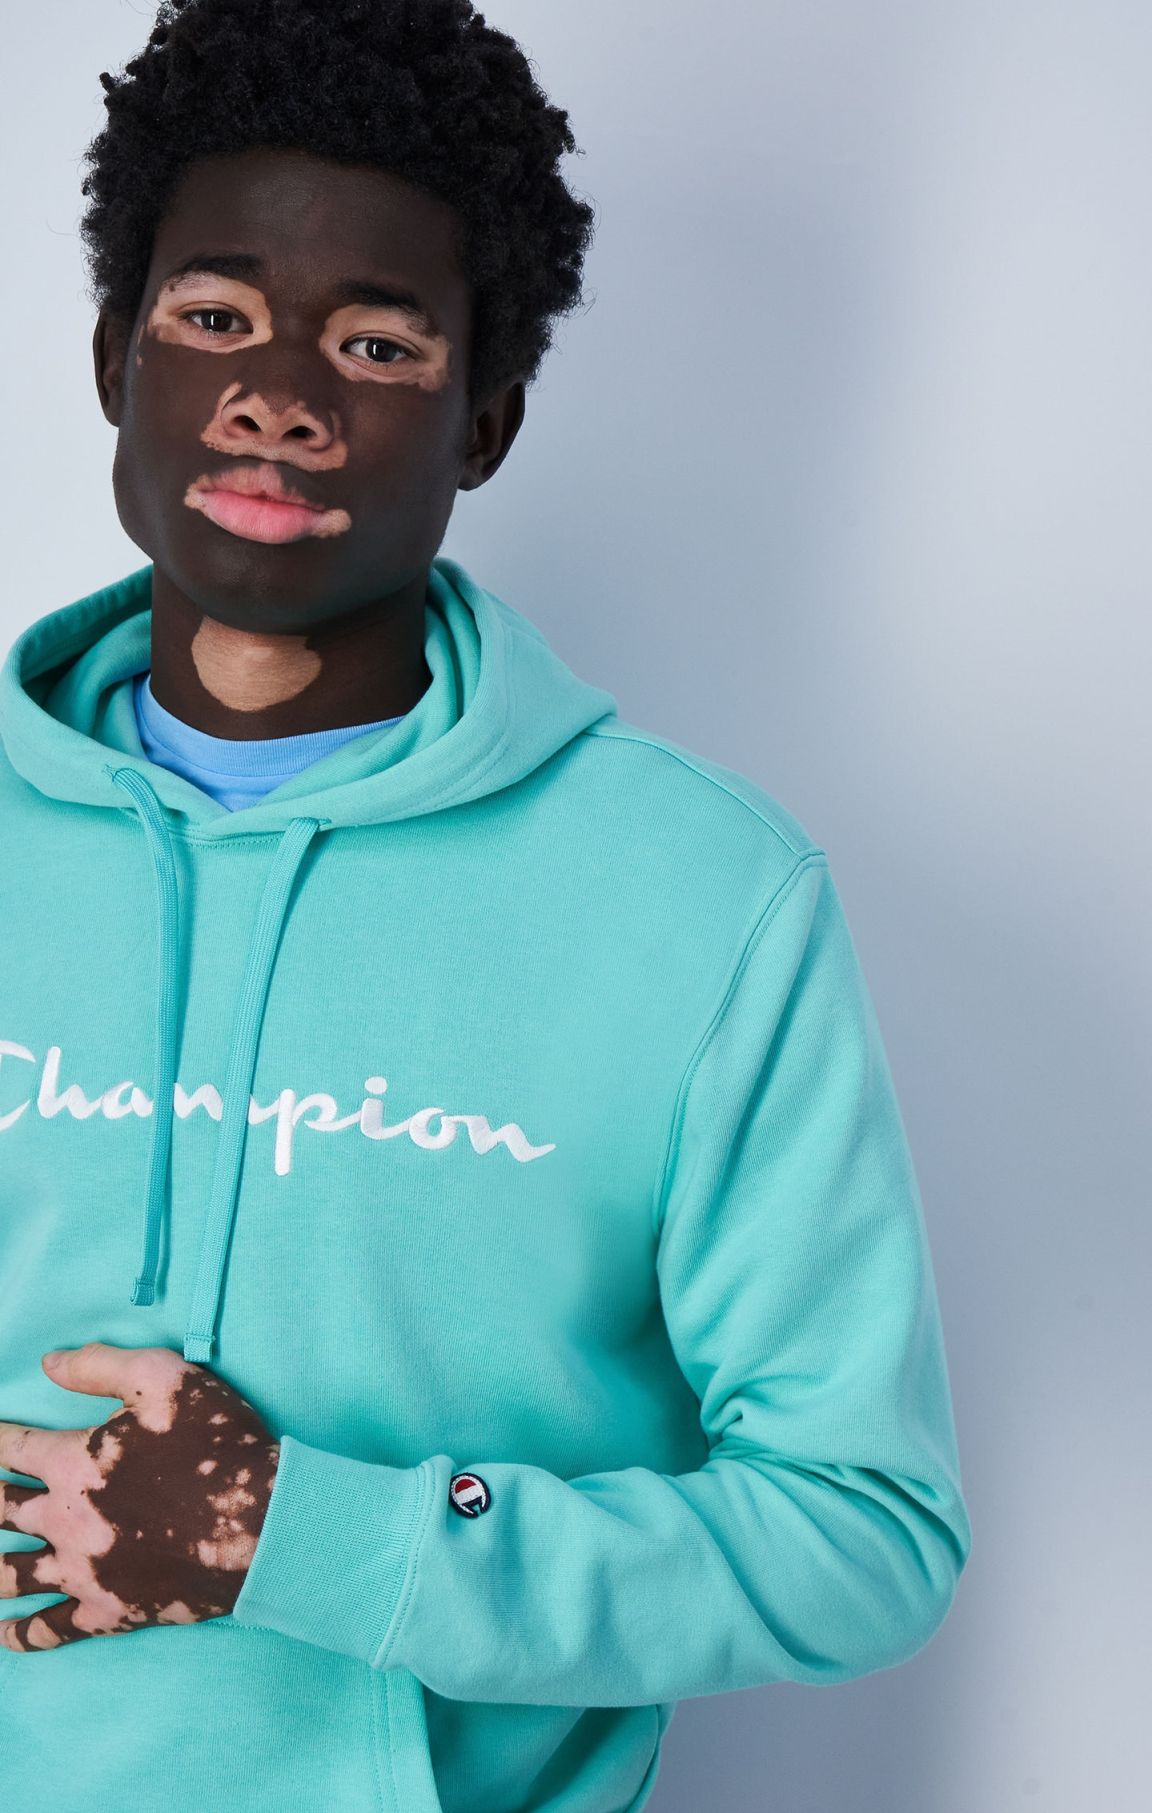 Sweatshirt à capuche et grand logo Champion brodé